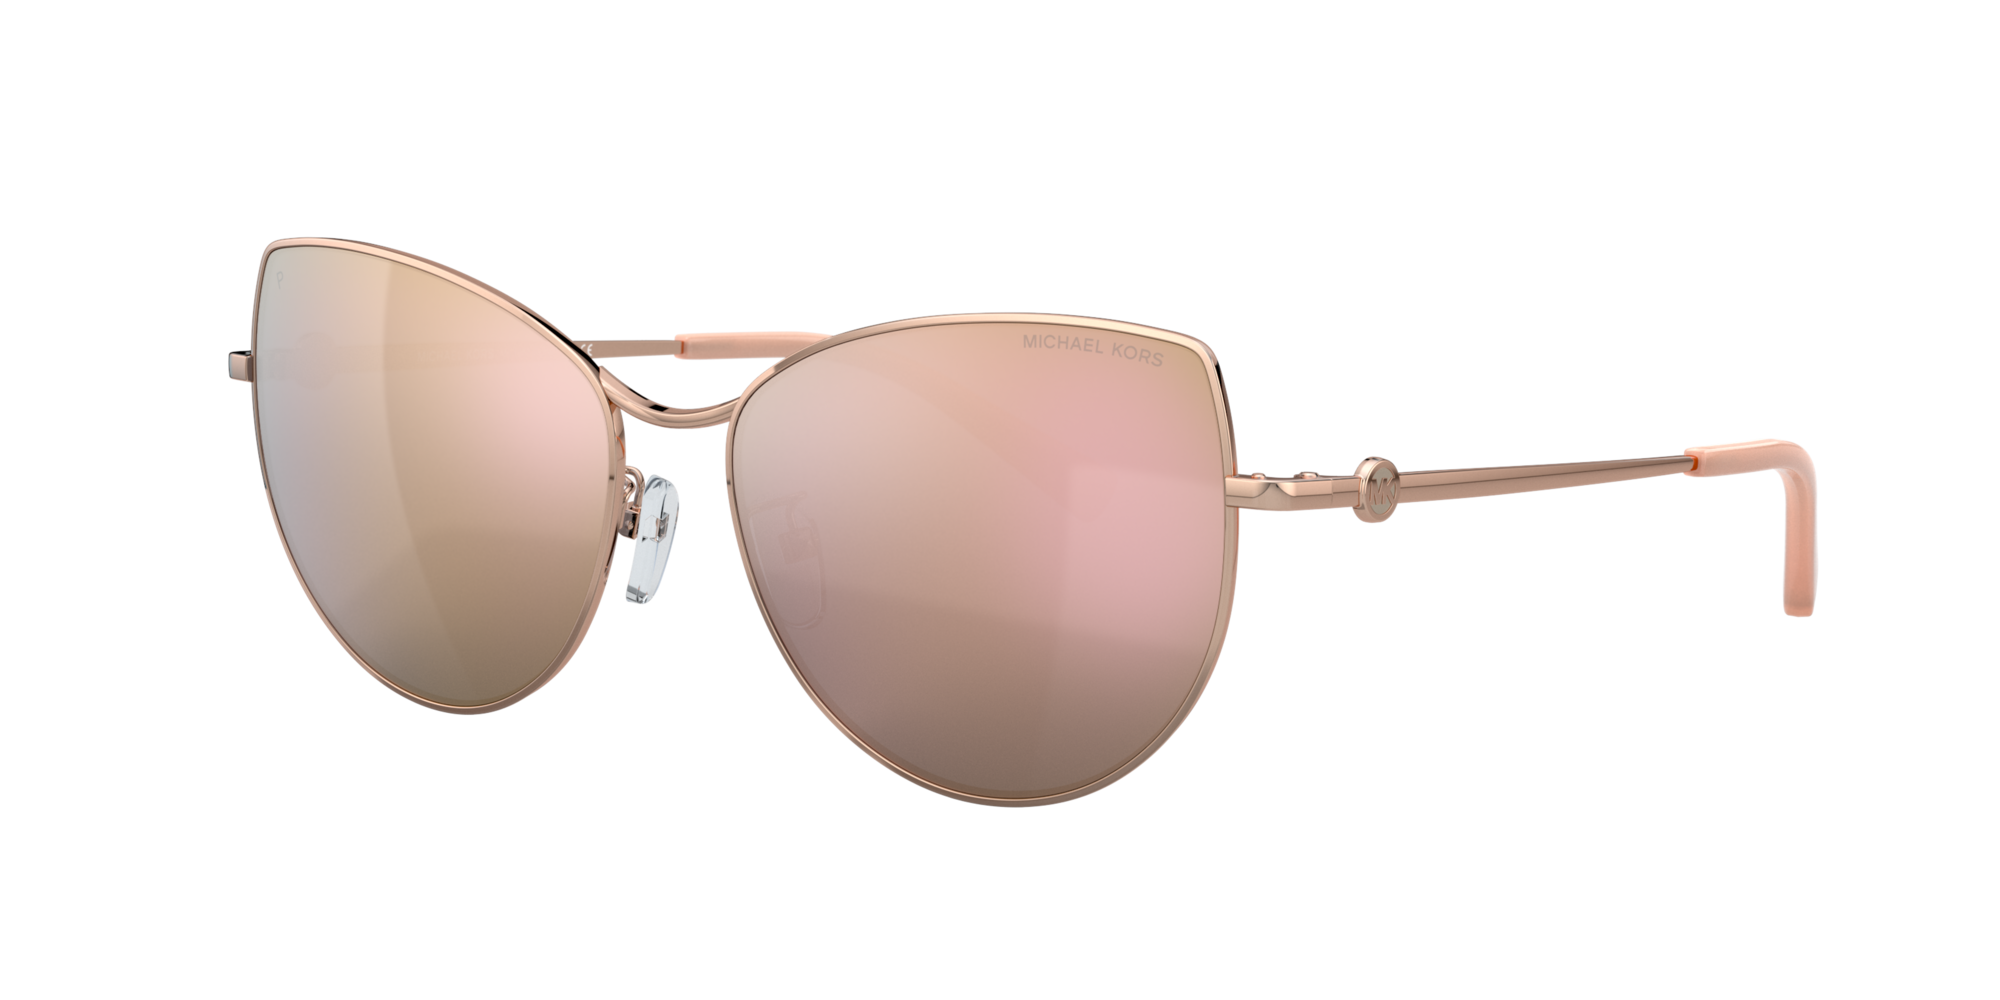 Consulte nosso catálogo de Óculos de Sol Michael Kors Eyewear com diversos modelos e preços para sua escolha.